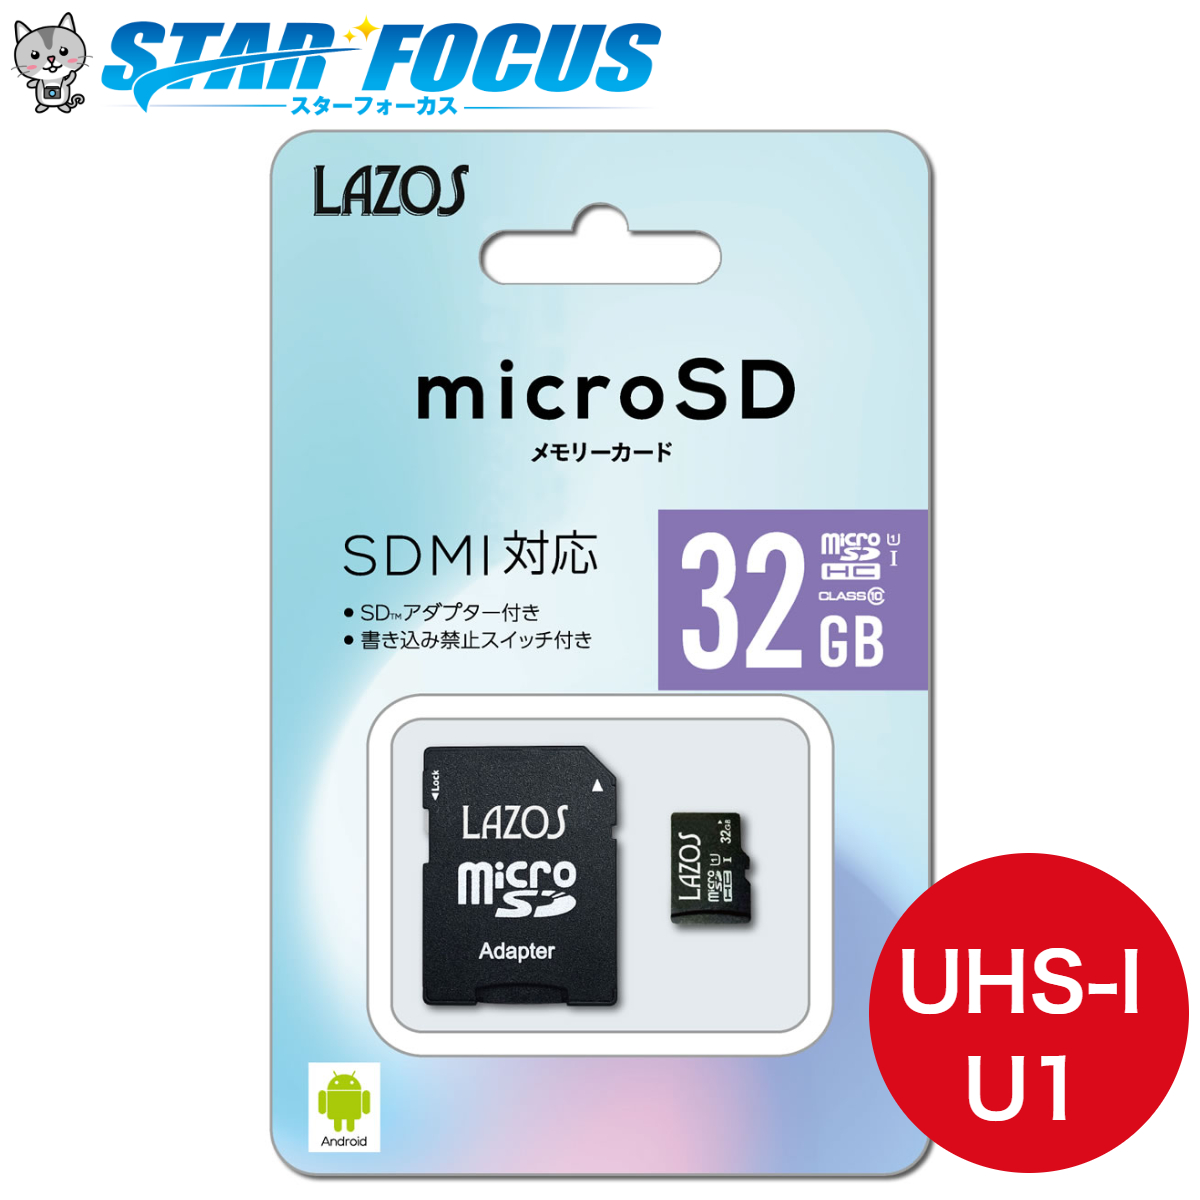 毎週更新 送料無料 定形郵便マイクロSDカード Class10 64GB 32GB×2枚セット microSDHC SD変換アダプター付属  SDMI対応 大容量 S 32ギガ新ラゾスを2枚